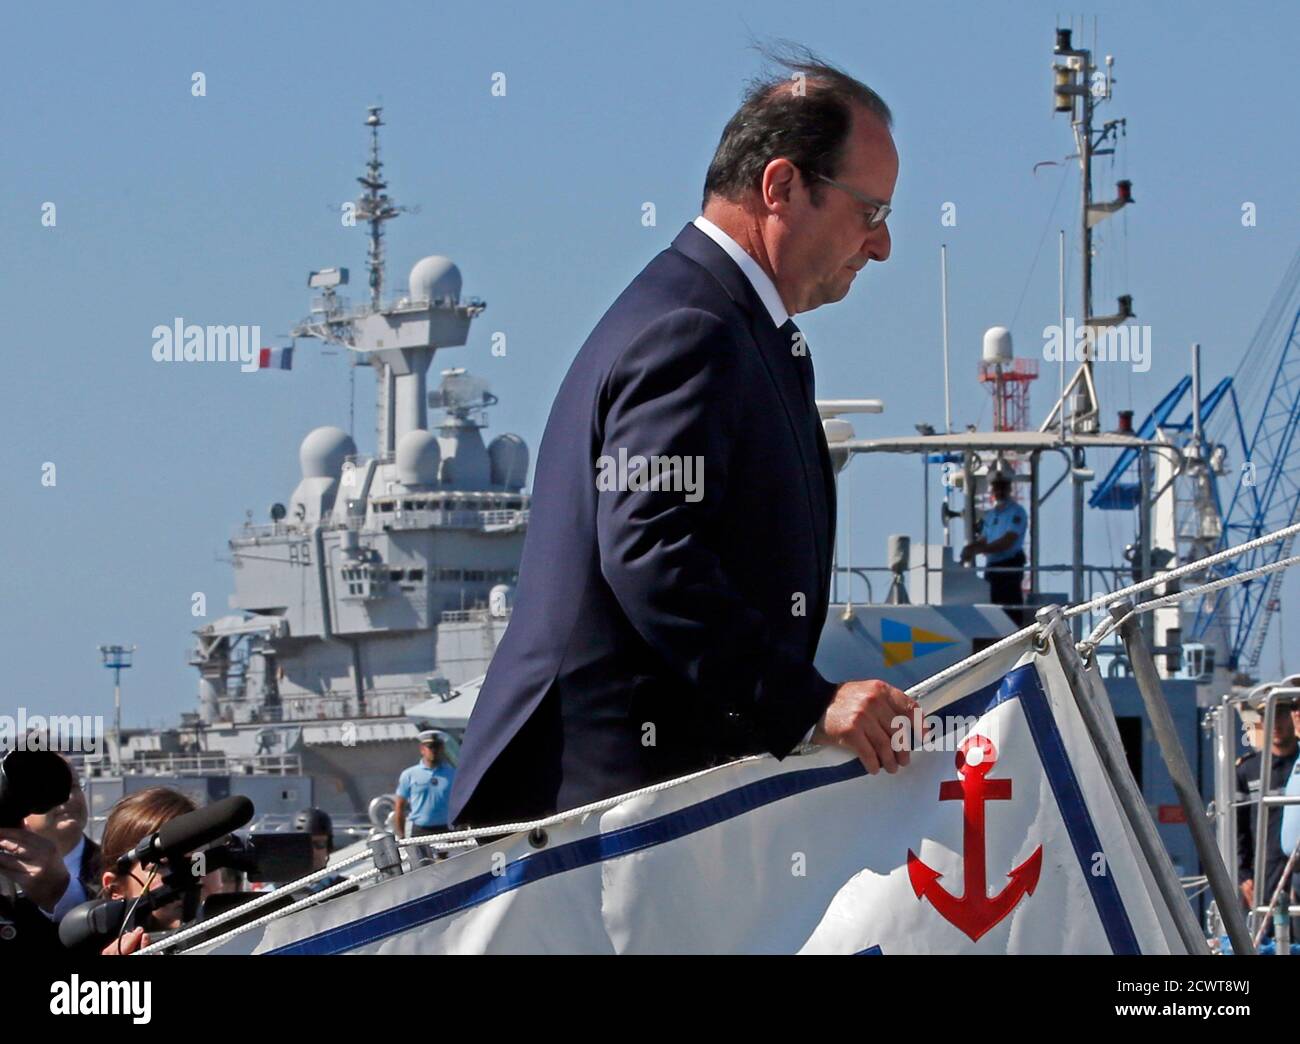 Le président français François Hollande monte à bord d'un bateau militaire  pour assister à un exercice de sécurité lors d'une visite à la base navale  de Toulon, dans le sud-est de la